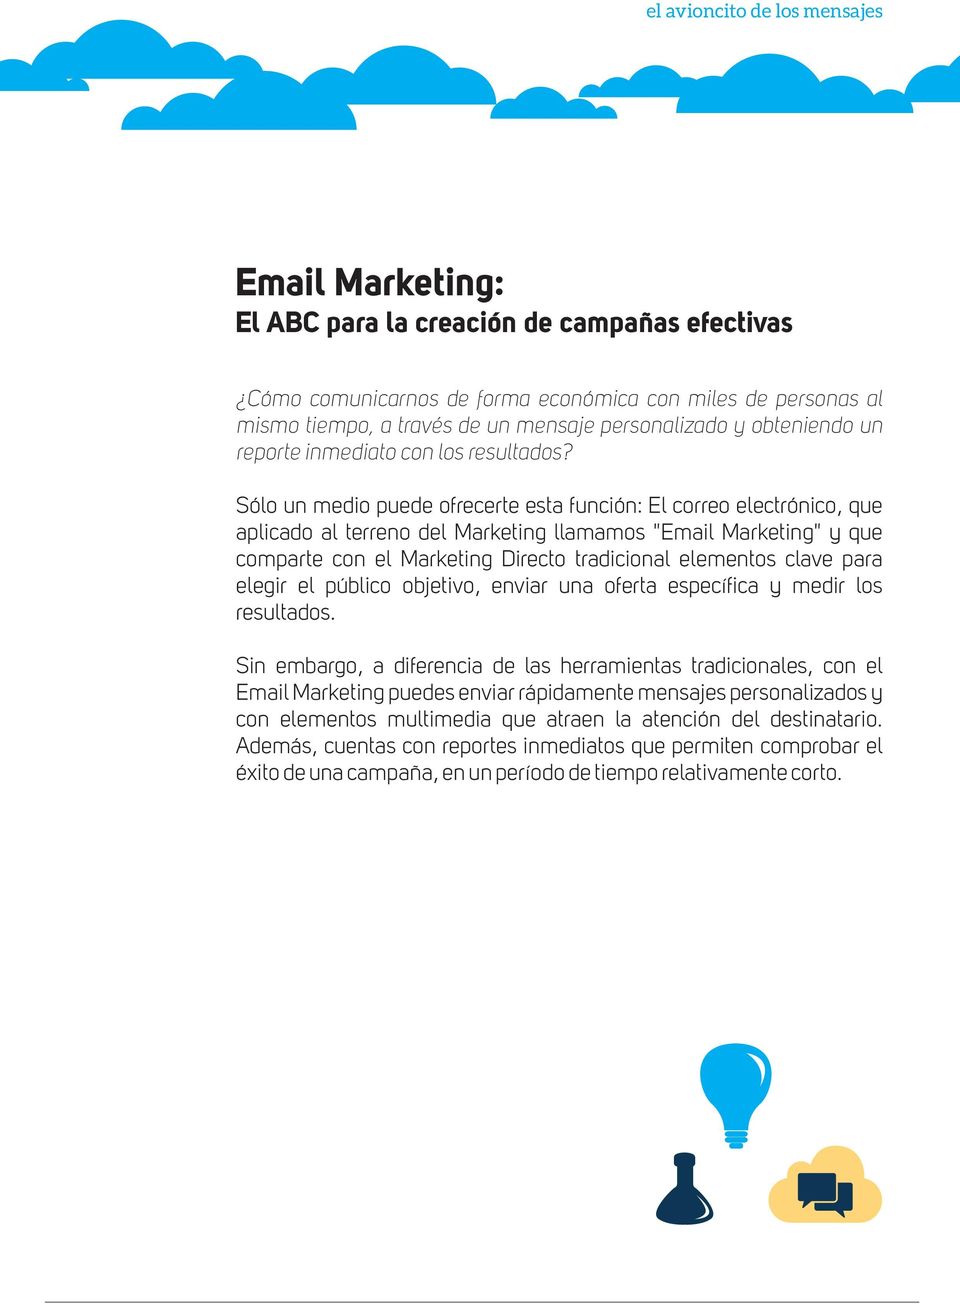 Sólo un medio puede ofrecerte esta función: El correo electrónico, que aplicado al terreno del Marketing llamamos "Email Marketing" y que comparte con el Marketing Directo tradicional elementos clave